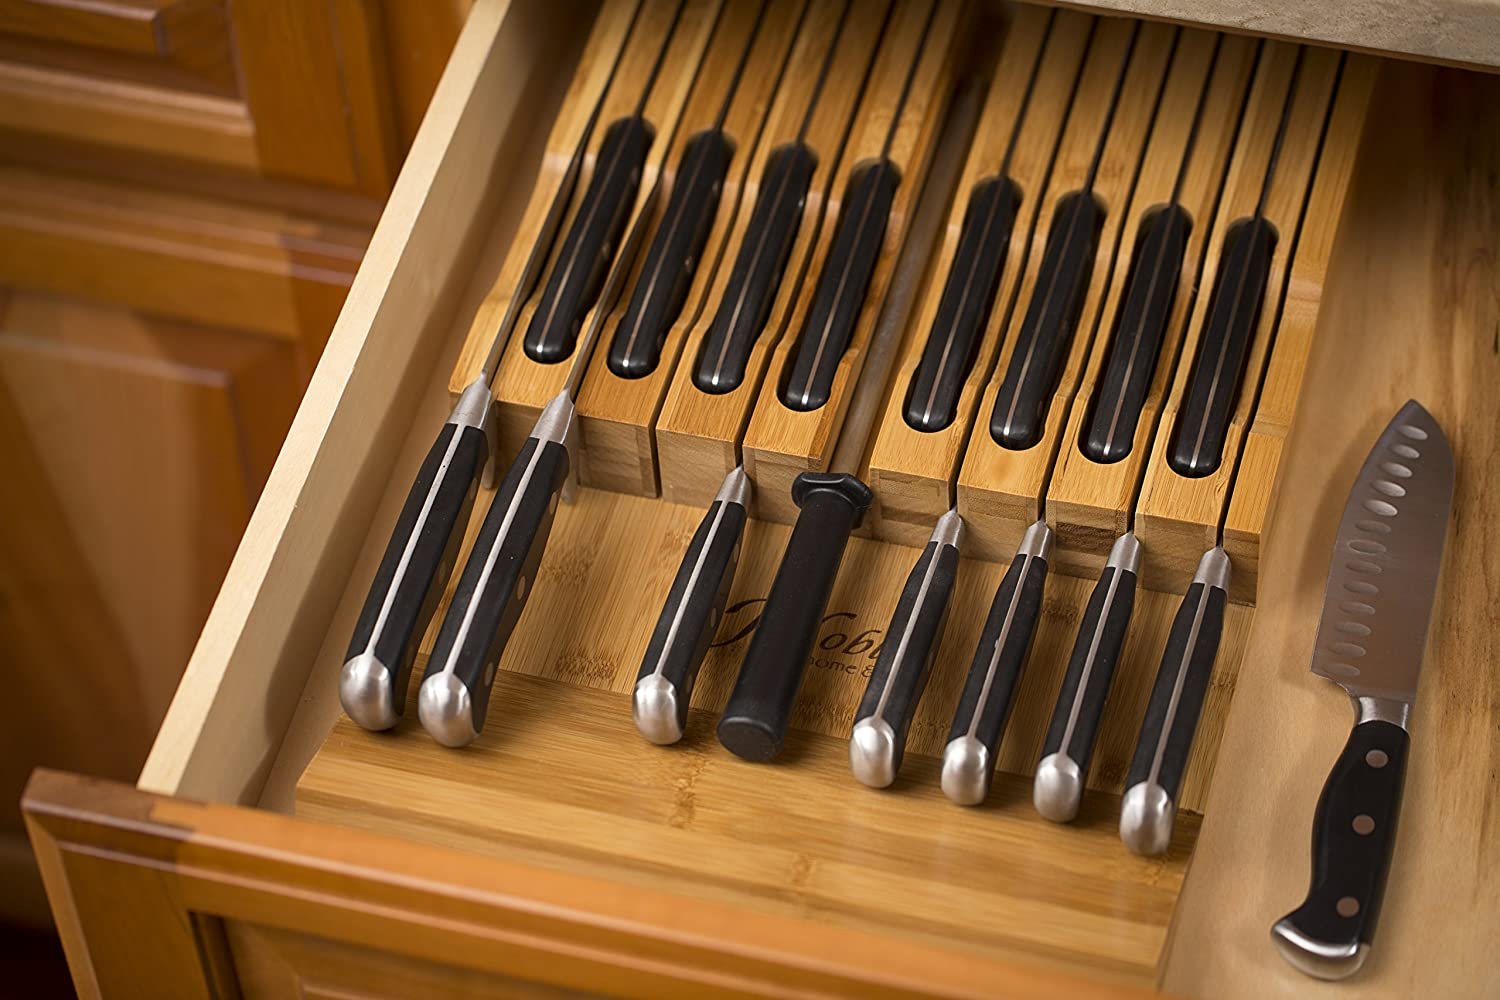 Knife drawer.jpg